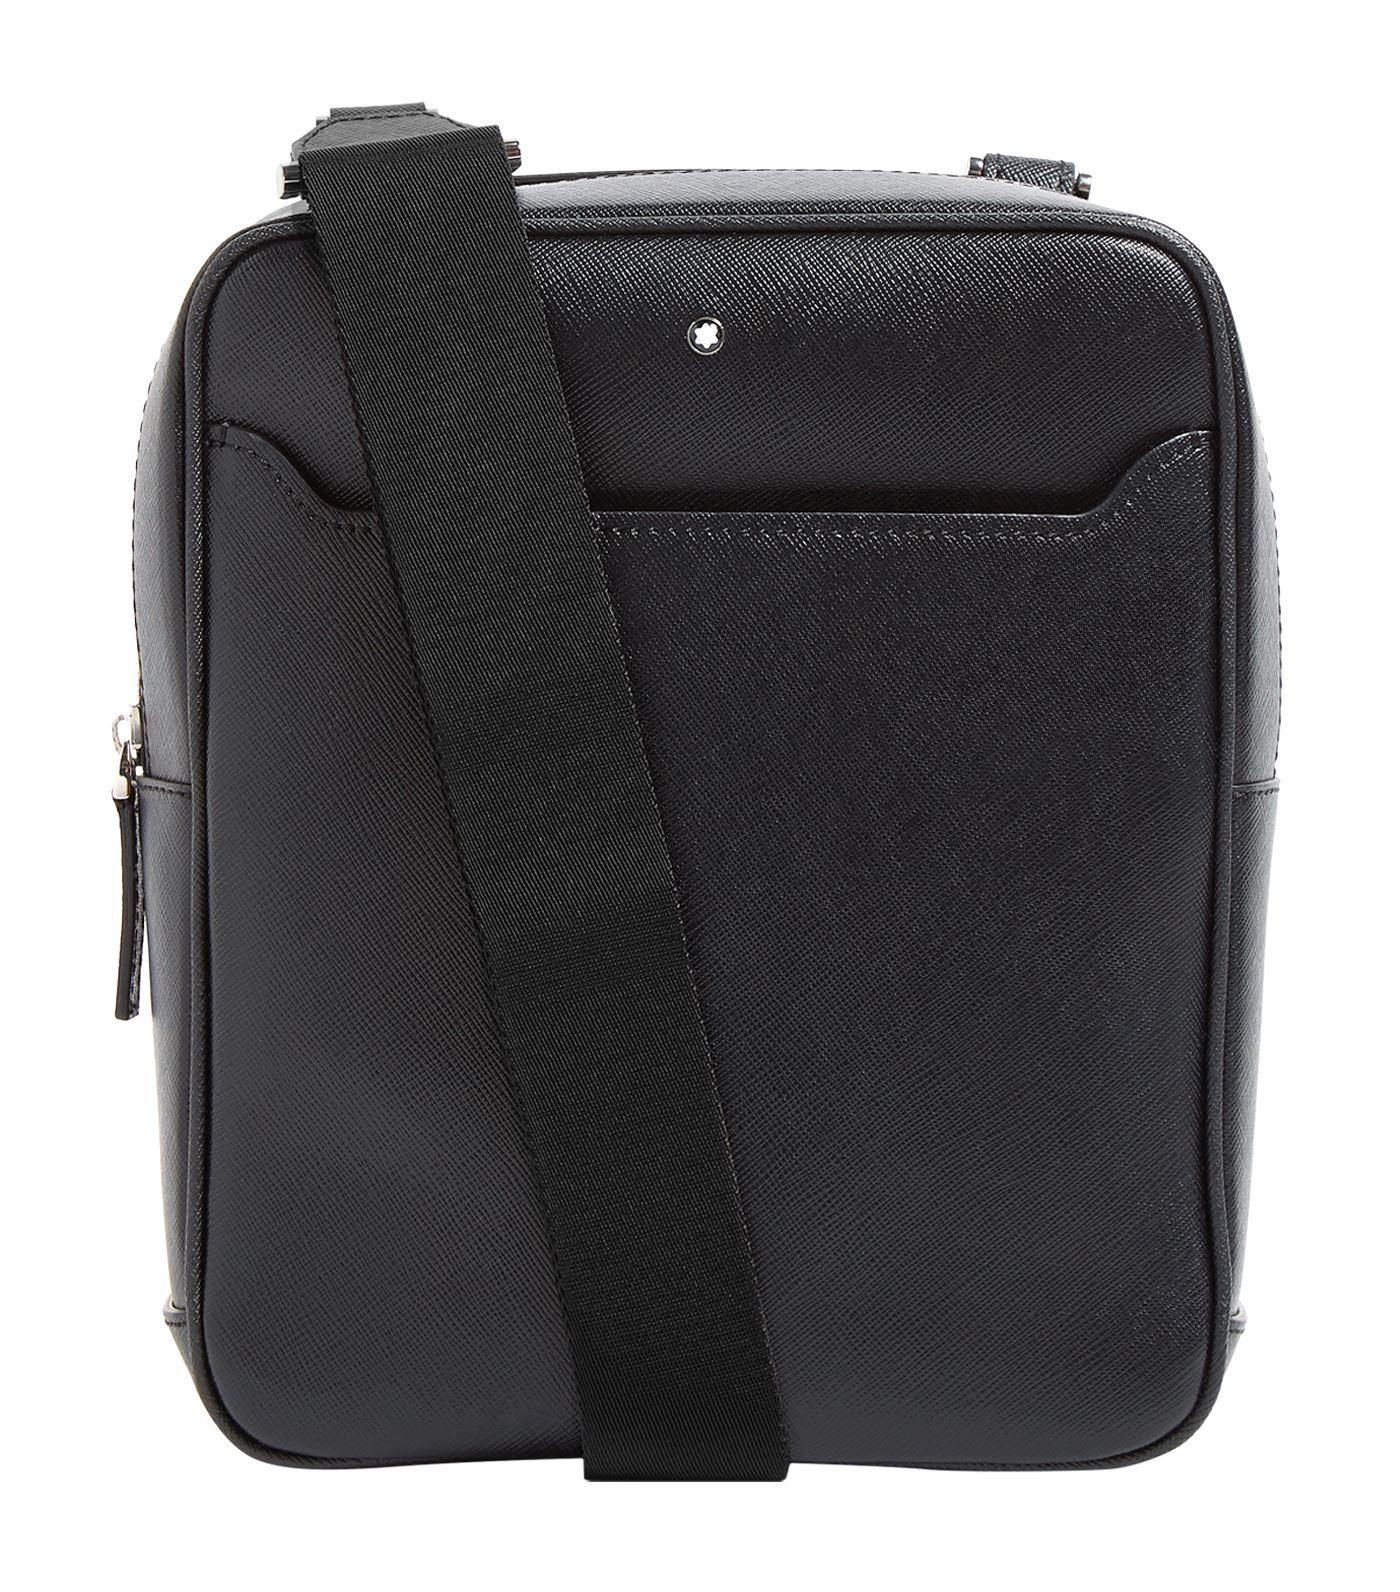 Montblanc Leather Sartorial Messenger Bag in Black for Men - Lyst